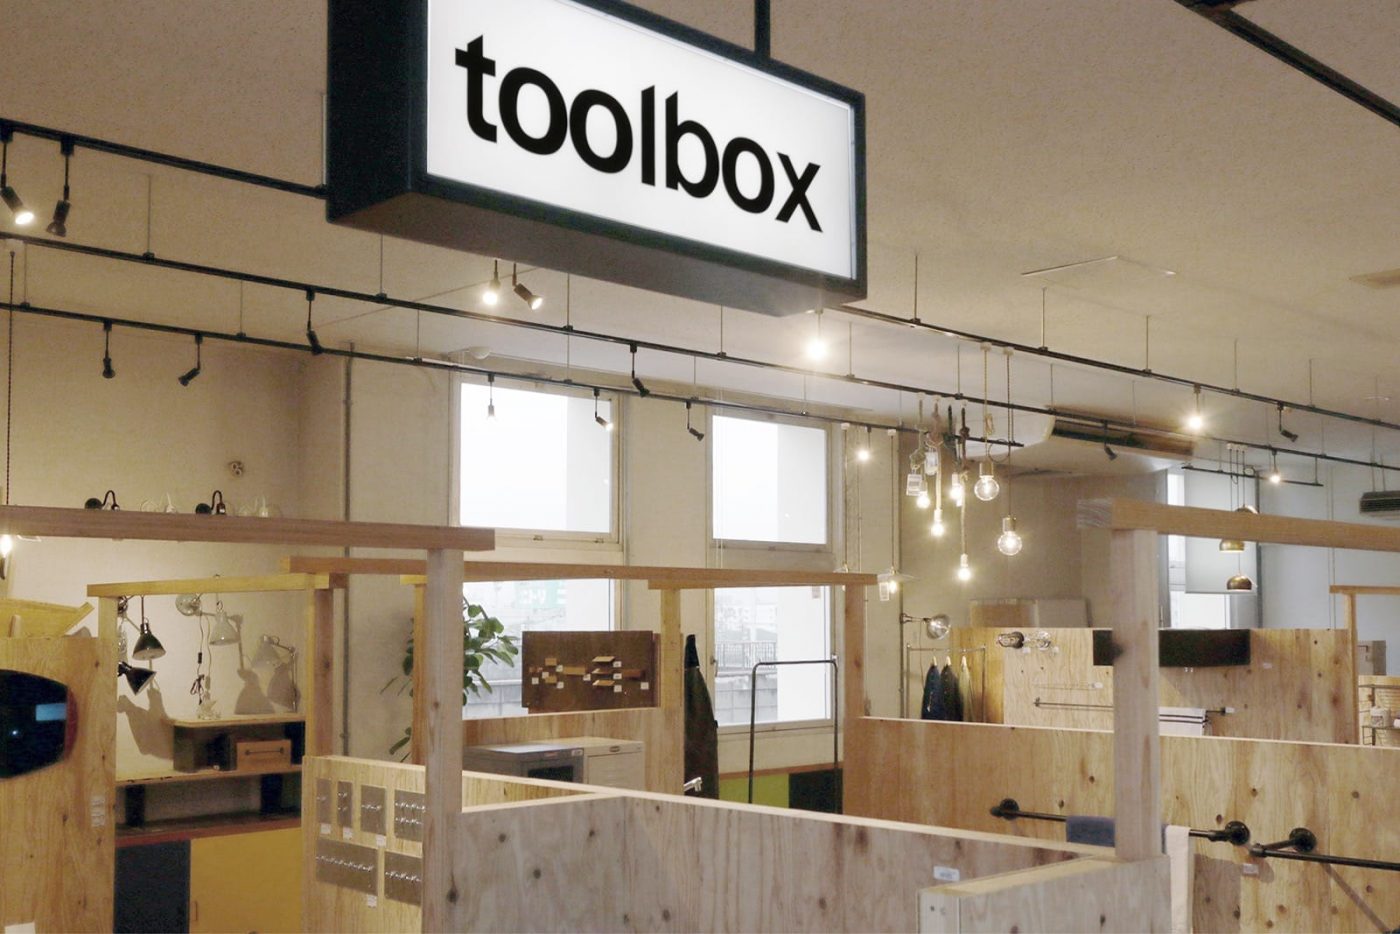 鹿児島にtoolbox商品が見られるショップ「comstore.」がオープン14